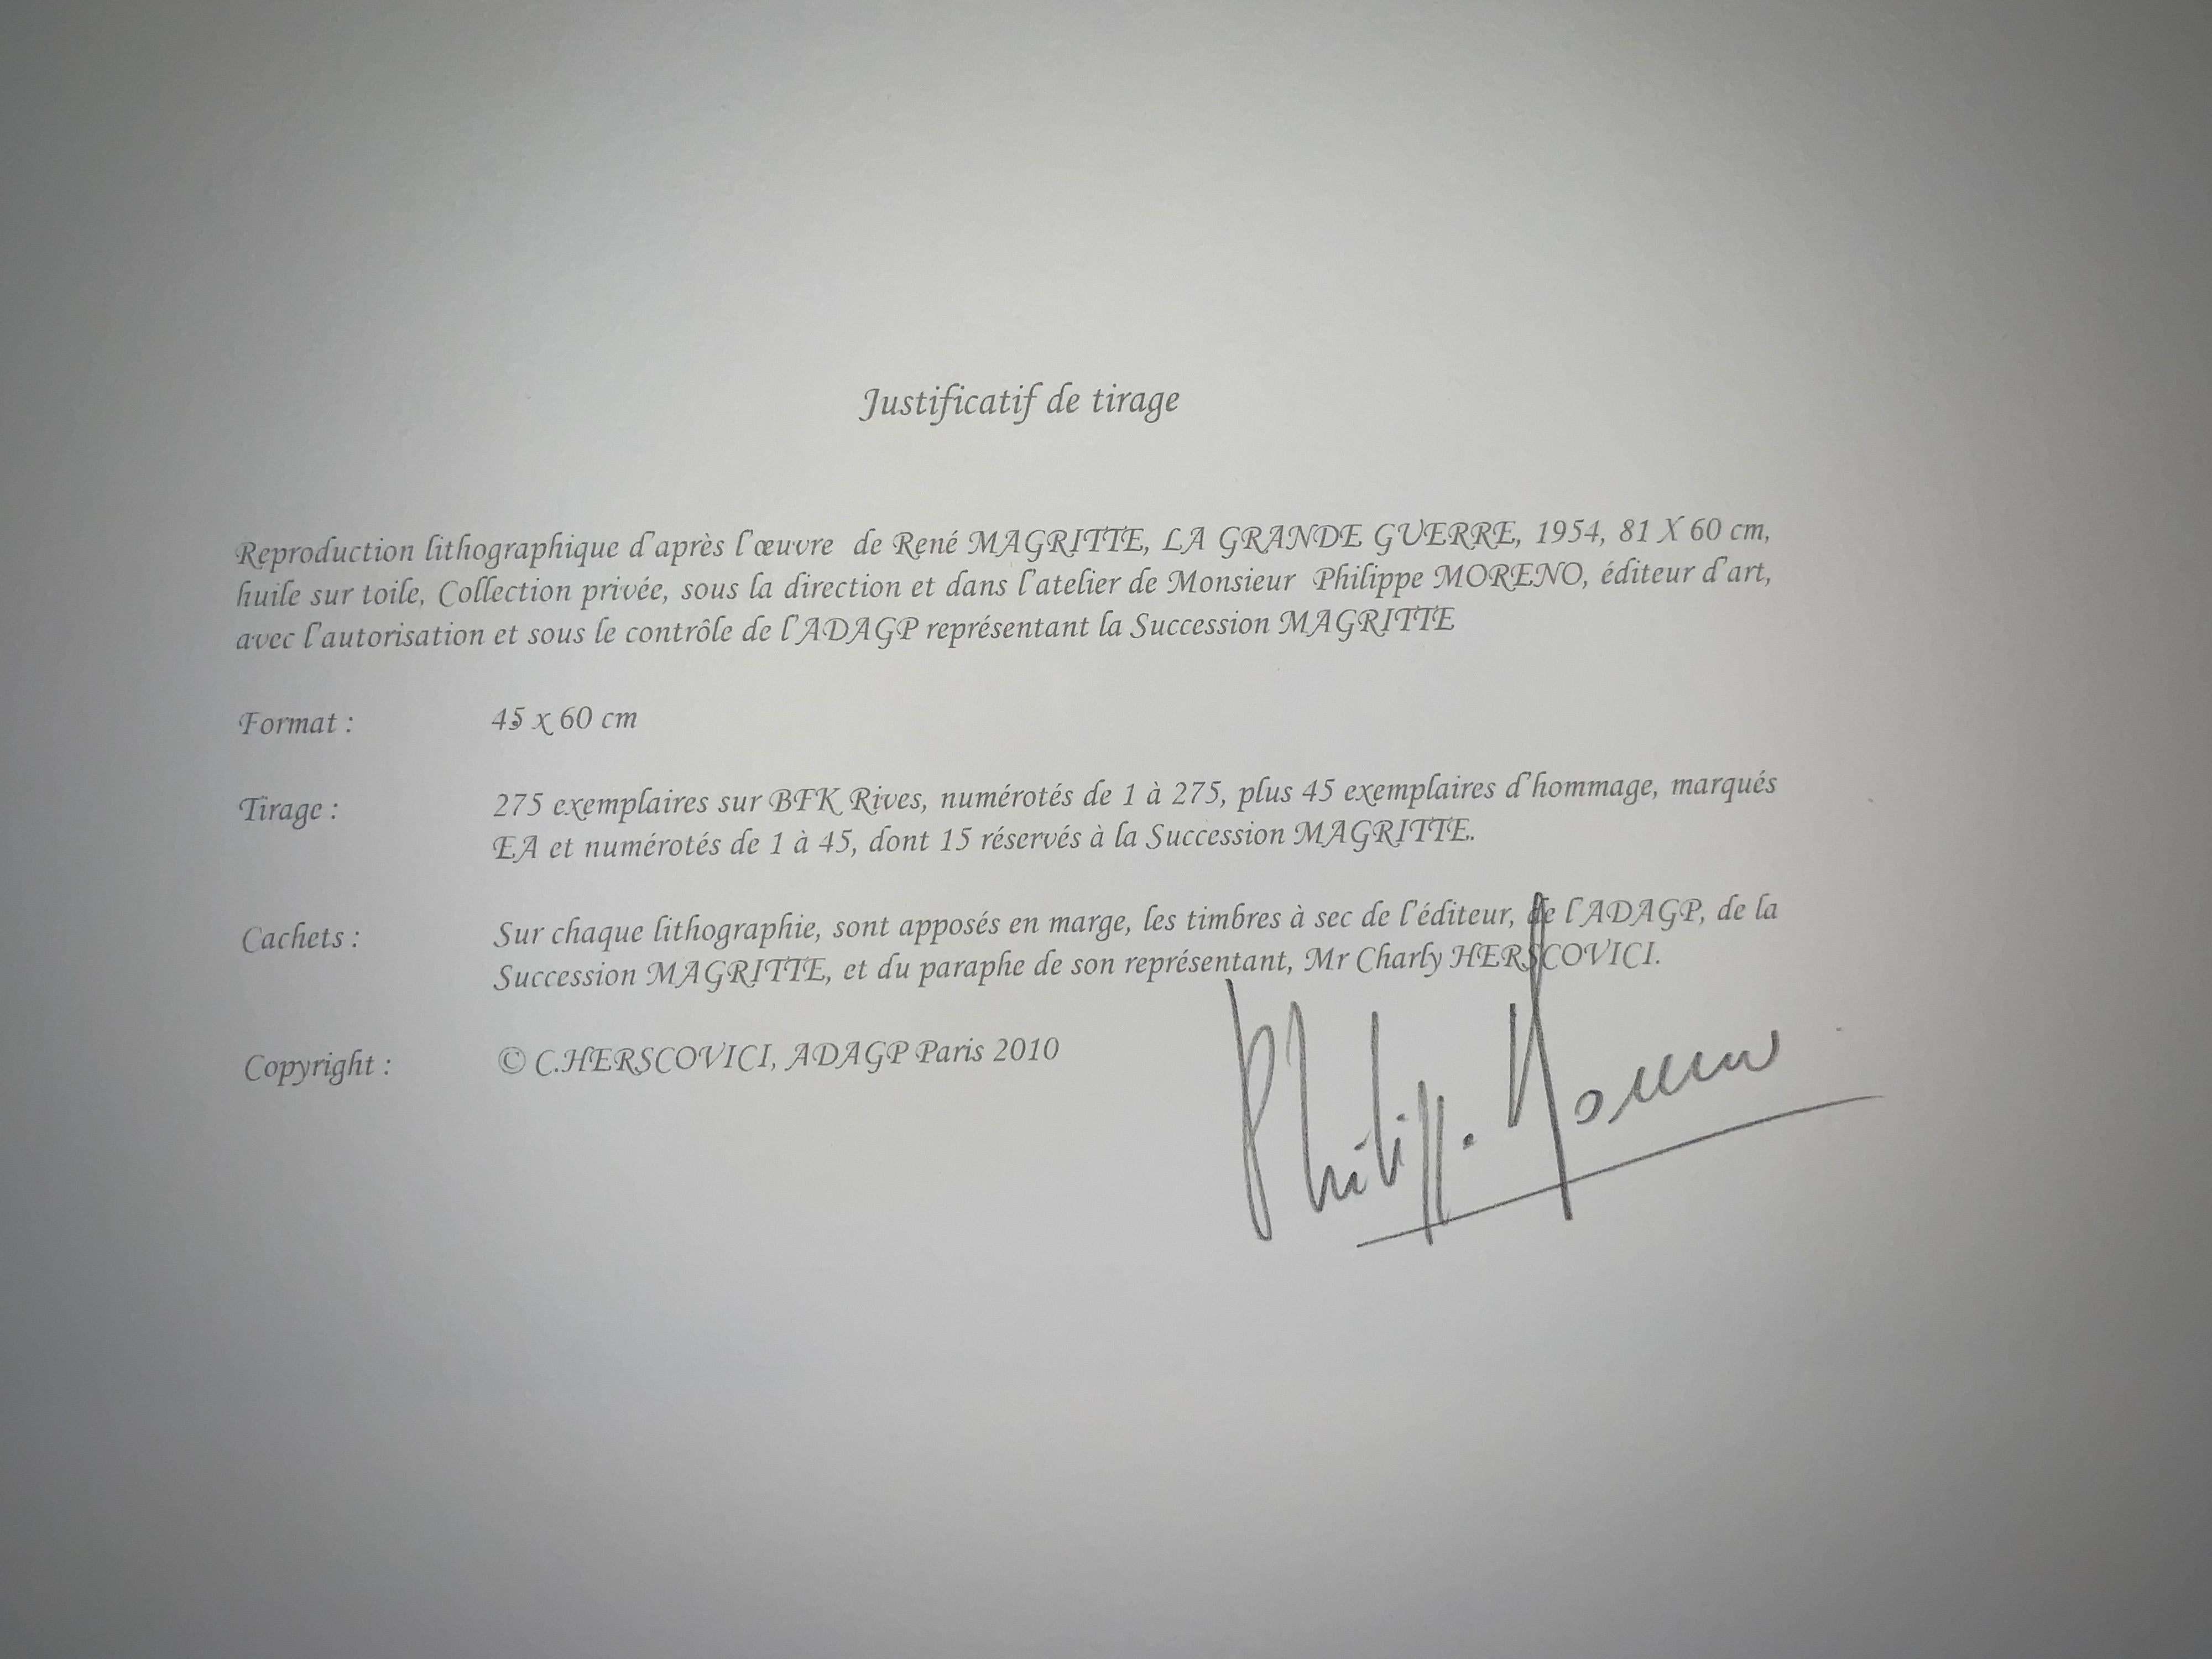 Farblithographie nach dem Öl auf Leinwand von René Magritte aus dem Jahr 1954, signiert von Magritte und nummeriert in einer Auflage von 275 Exemplaren. 
Die Lithographie trägt die Trockenstempel der Magritte-Stiftung und der ADAGP und ist mit